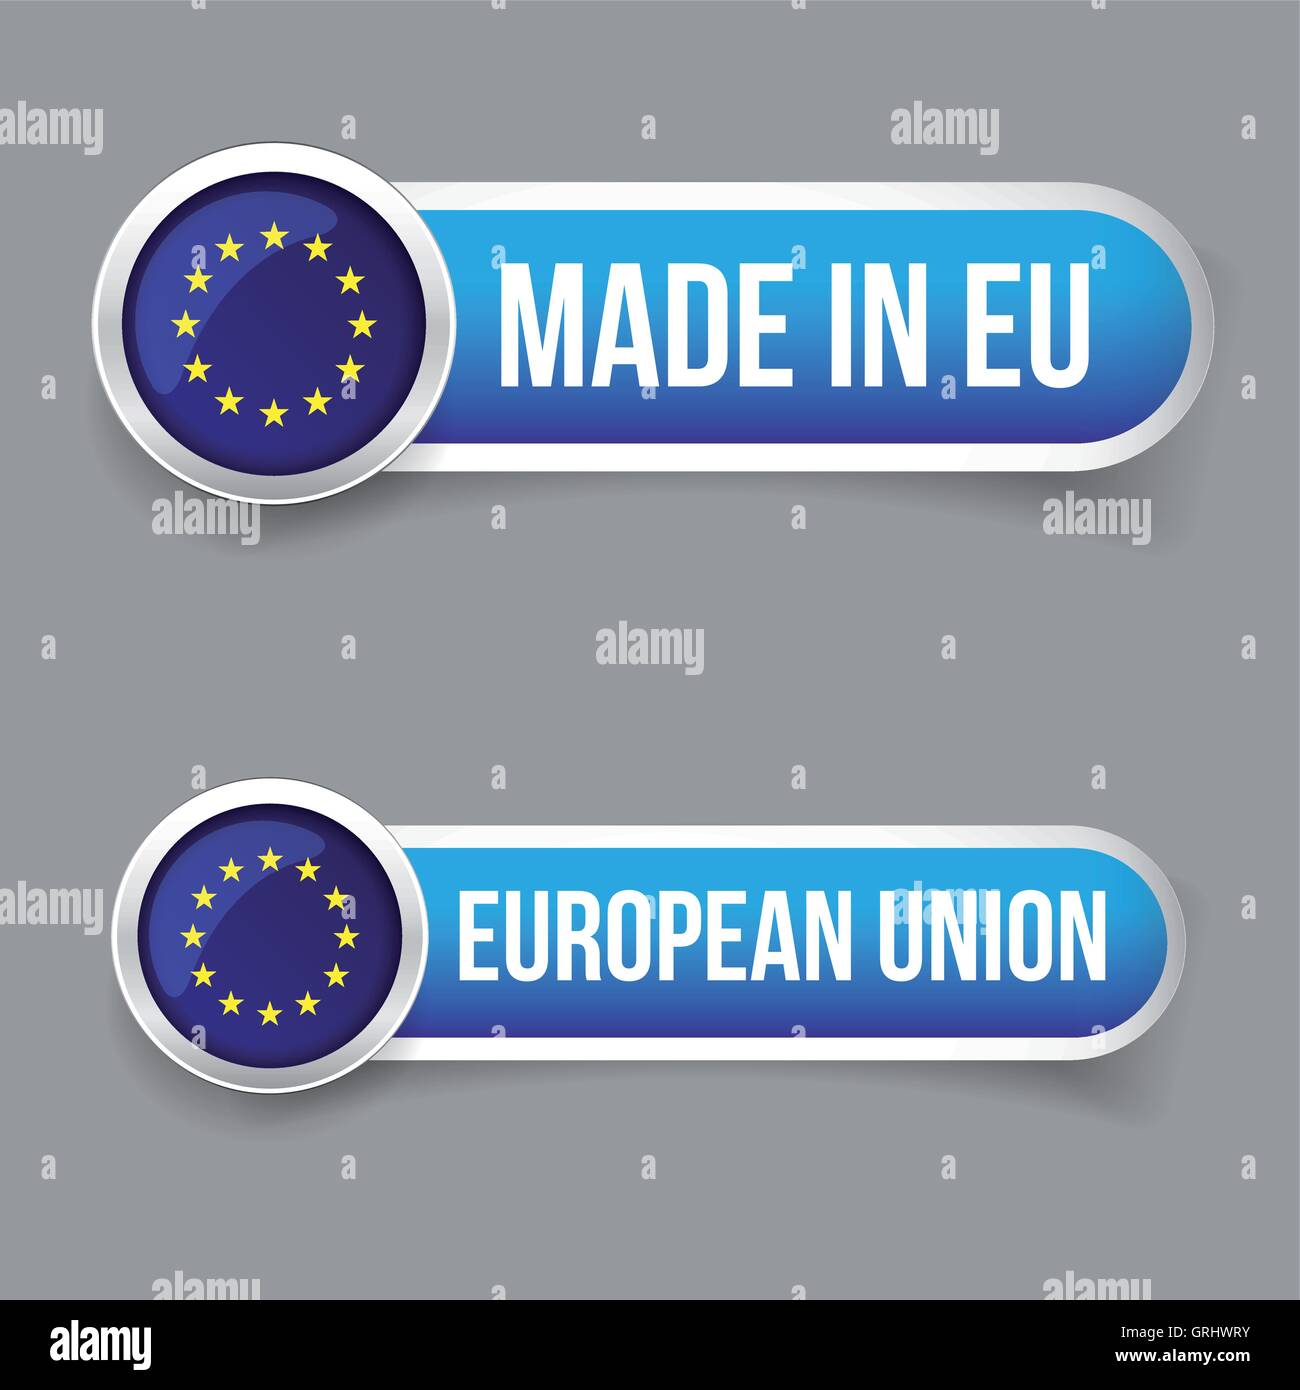 EU flag button and Made in EU button Stock Vector